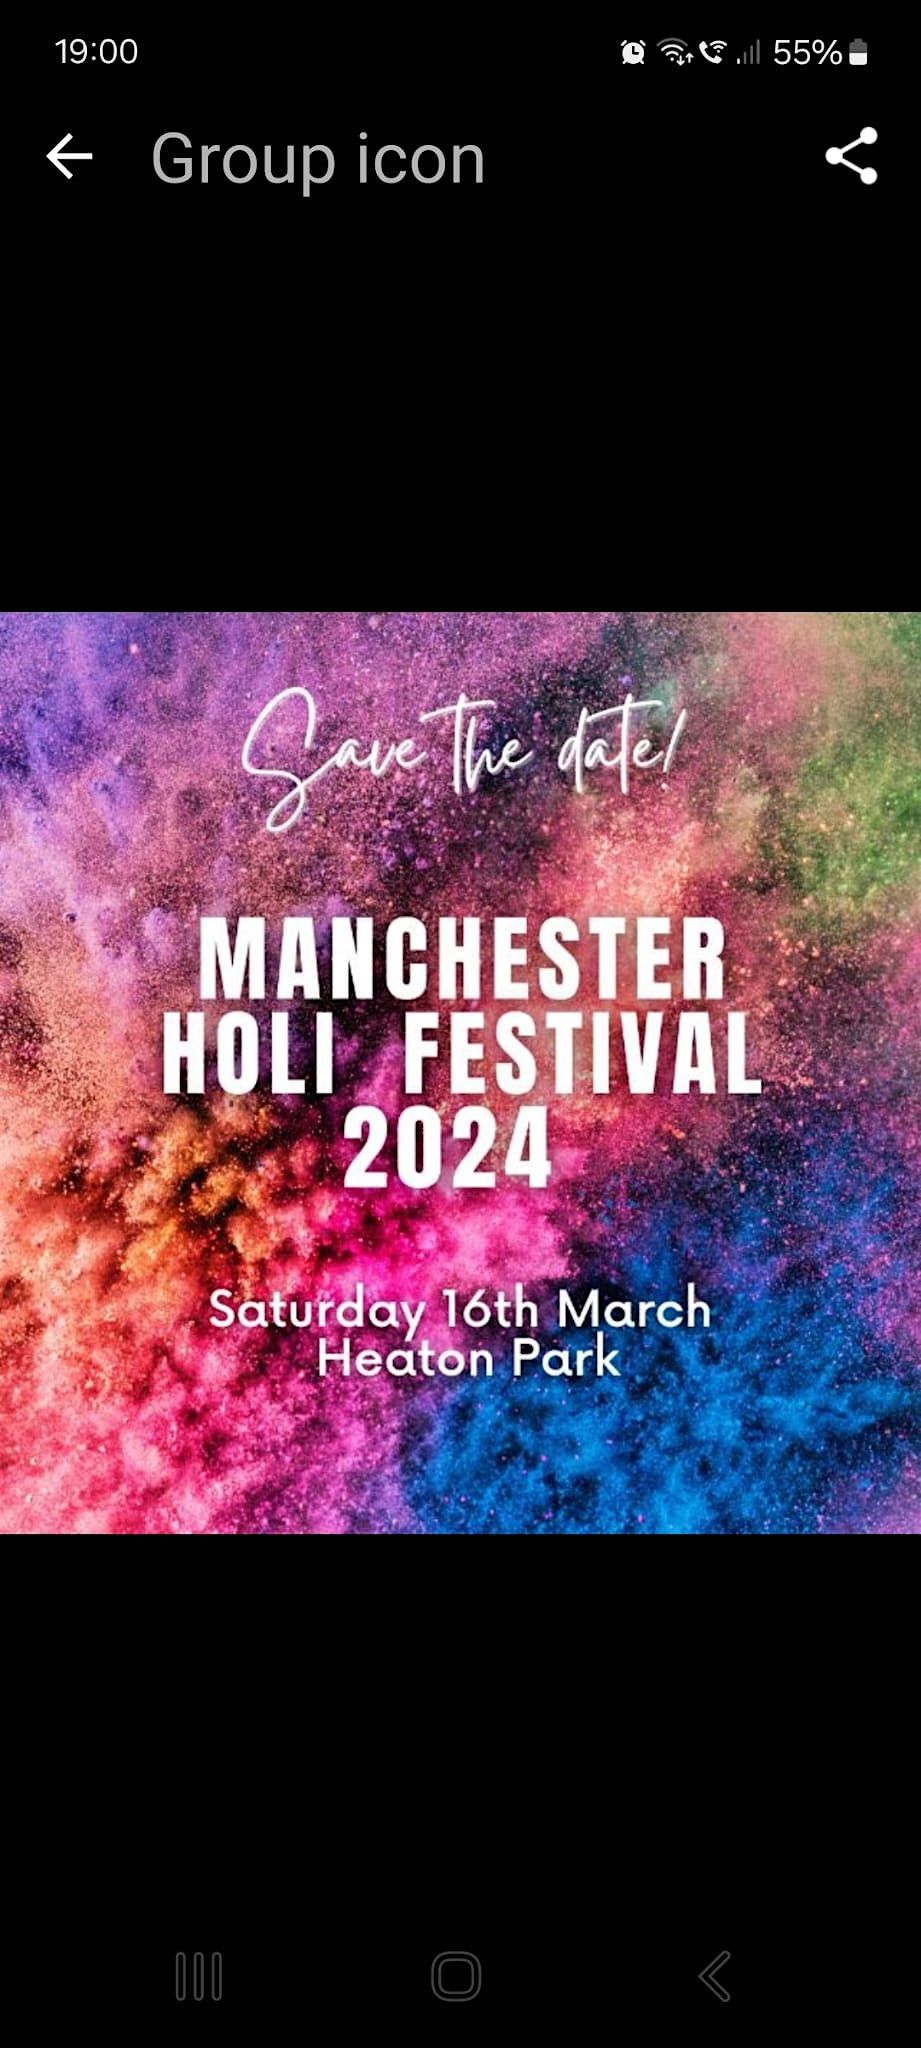 Manchester Holi Festival 2024